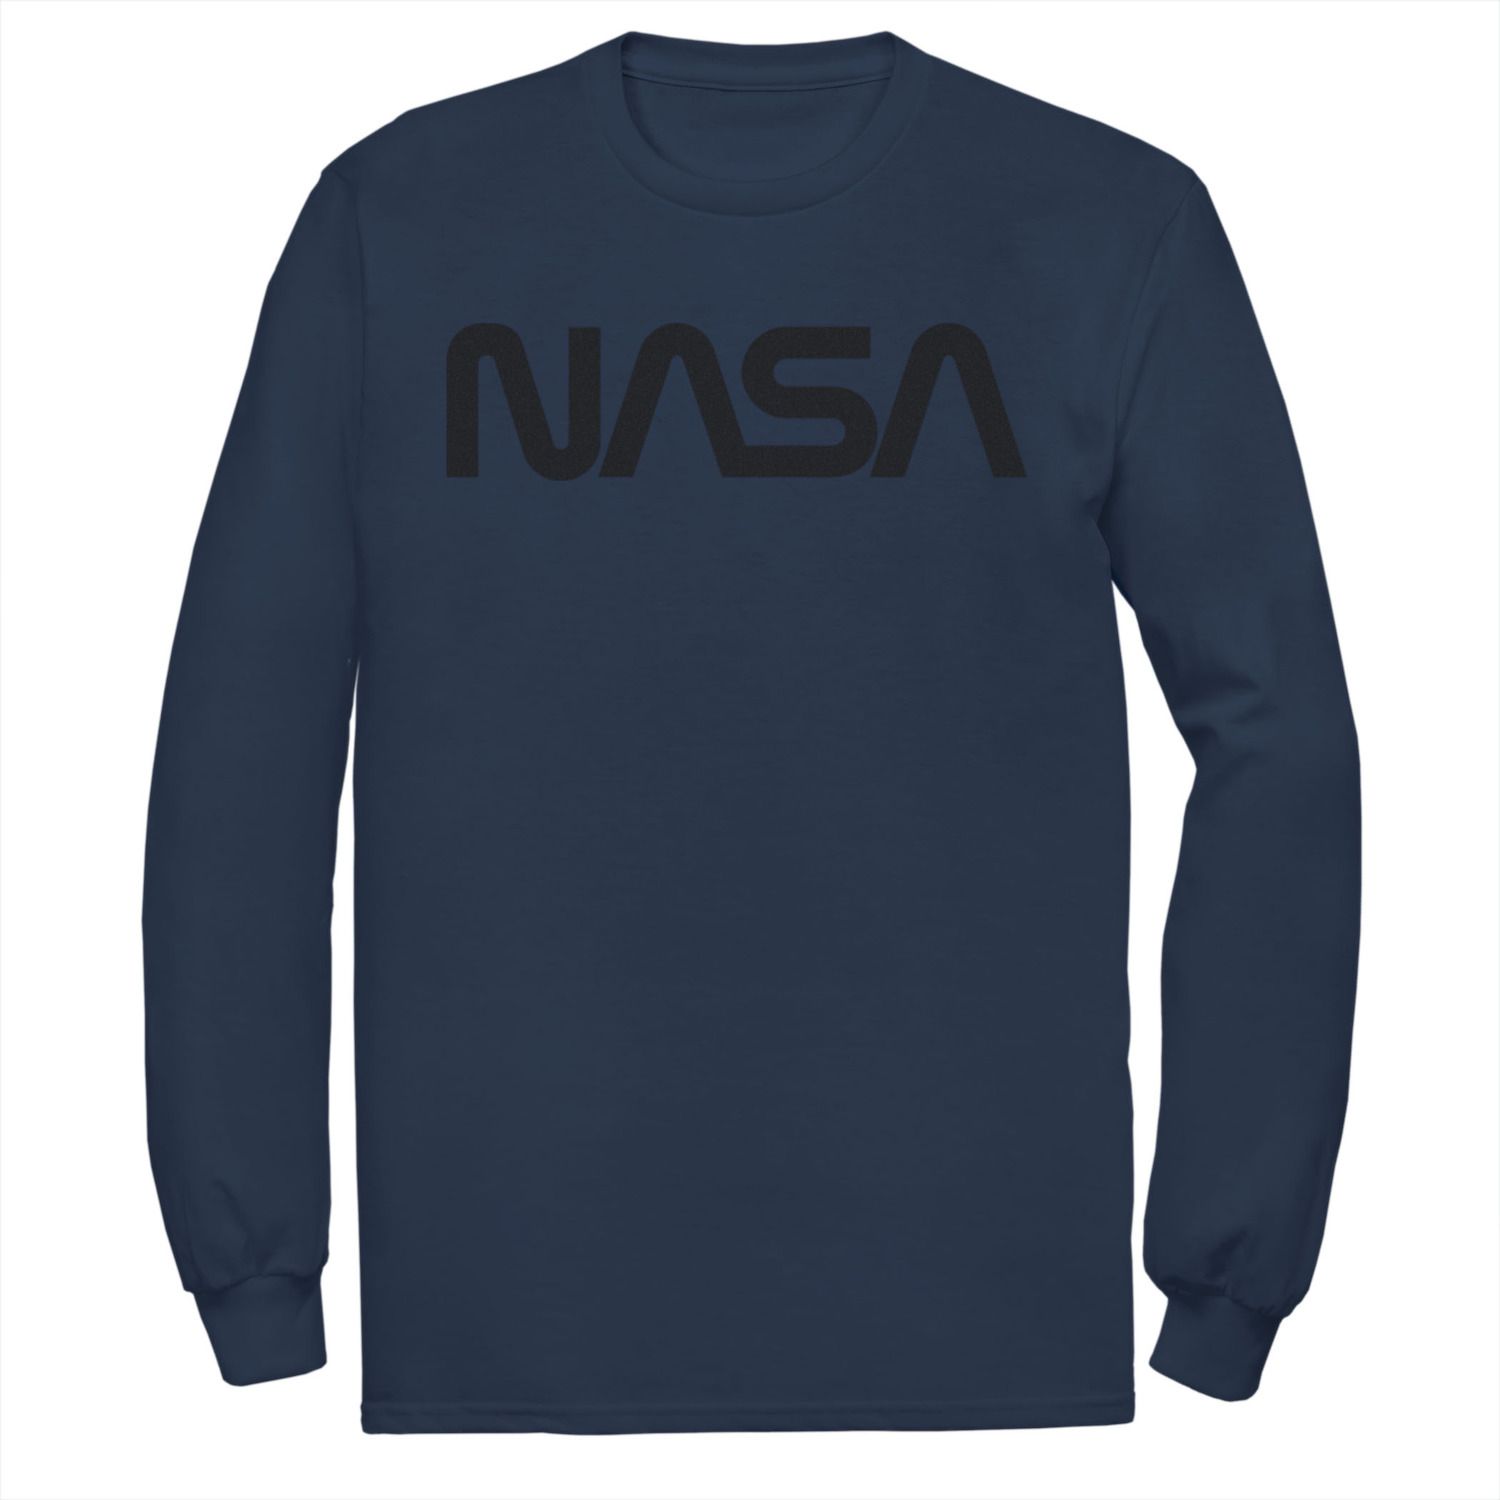 Мужская футболка с графическим рисунком и длинными рукавами с простым текстовым логотипом NASA Licensed Character